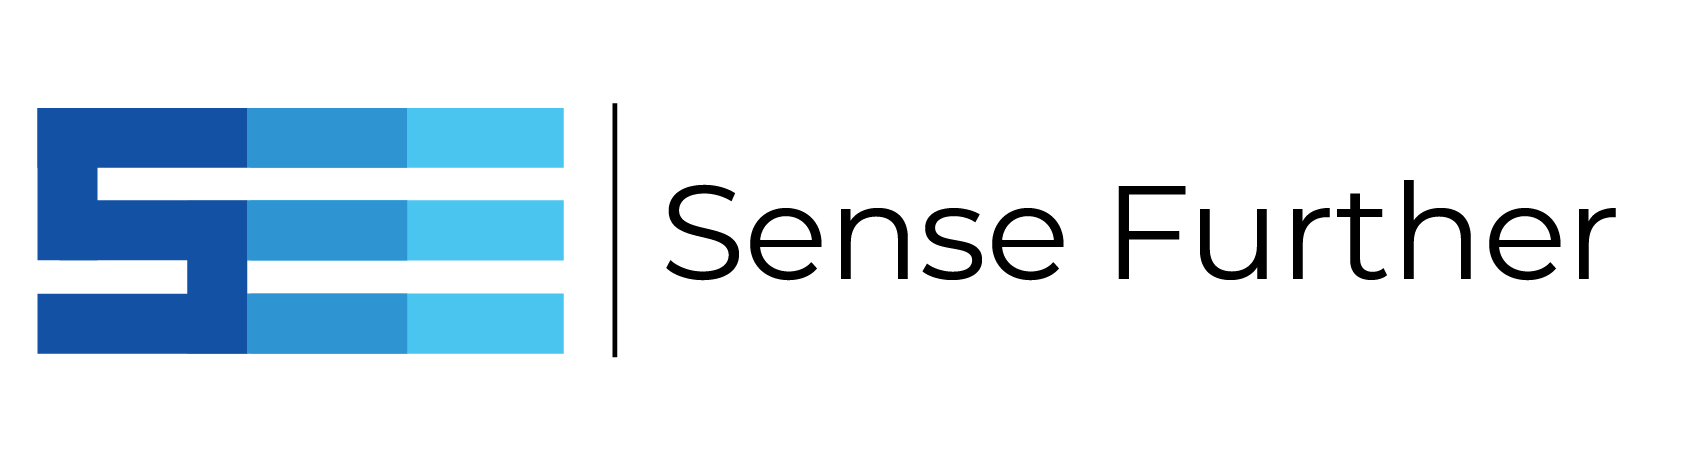 Company logo-long